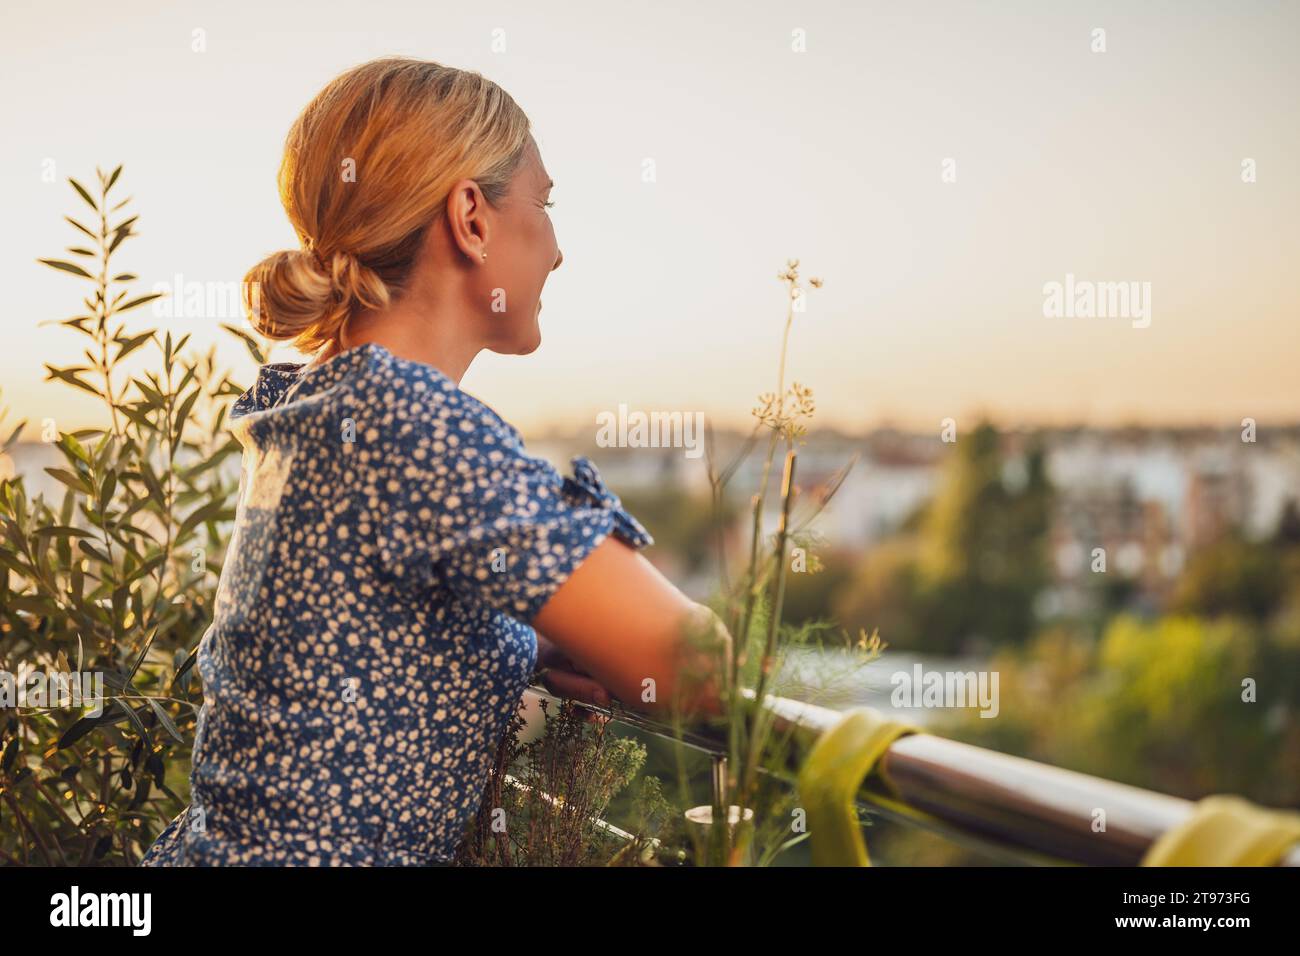 Belle femme aime se tenir debout sur son balcon au coucher du soleil. Banque D'Images